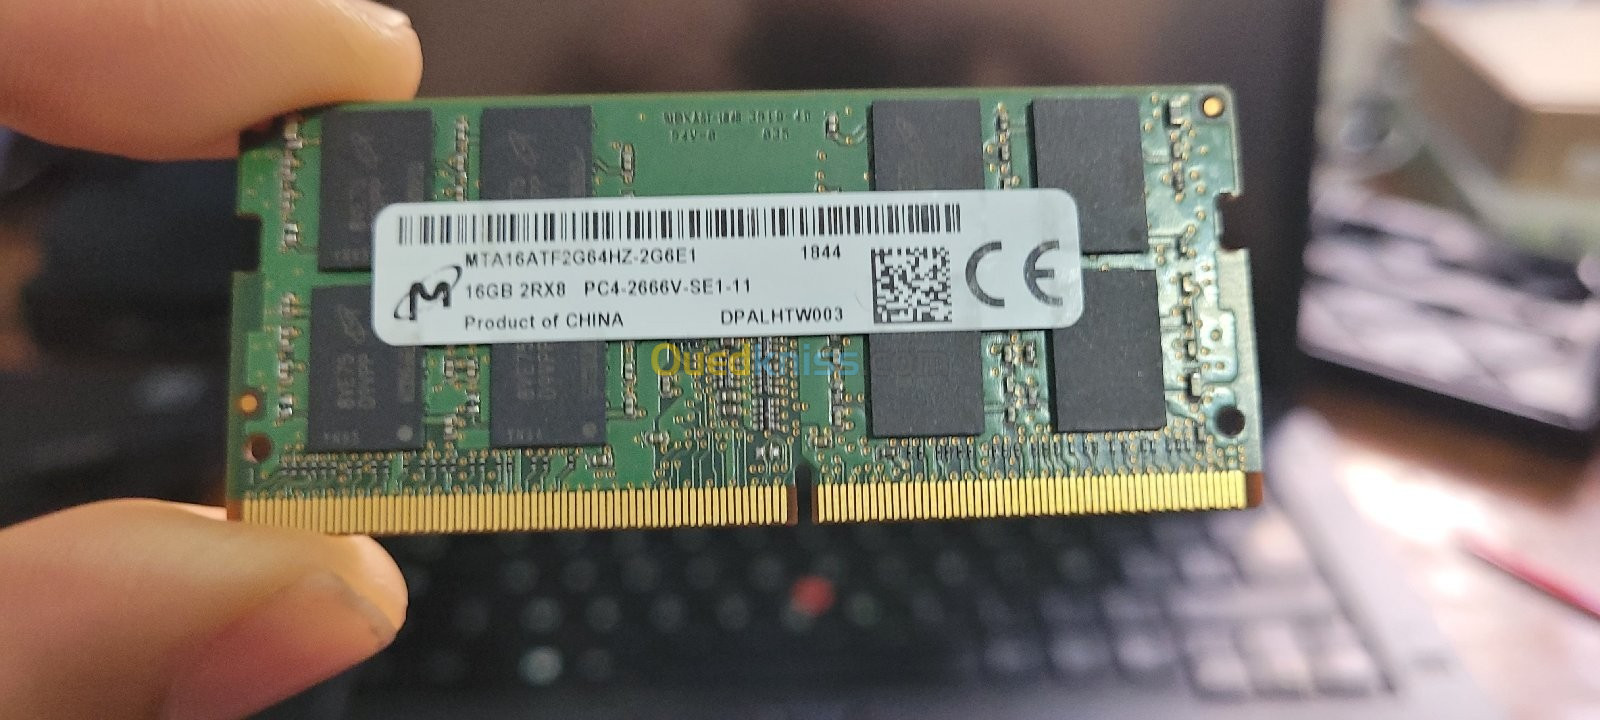 Ram DDR4. 16GO PC4 2666V-SE1-11 - Alger Algeria